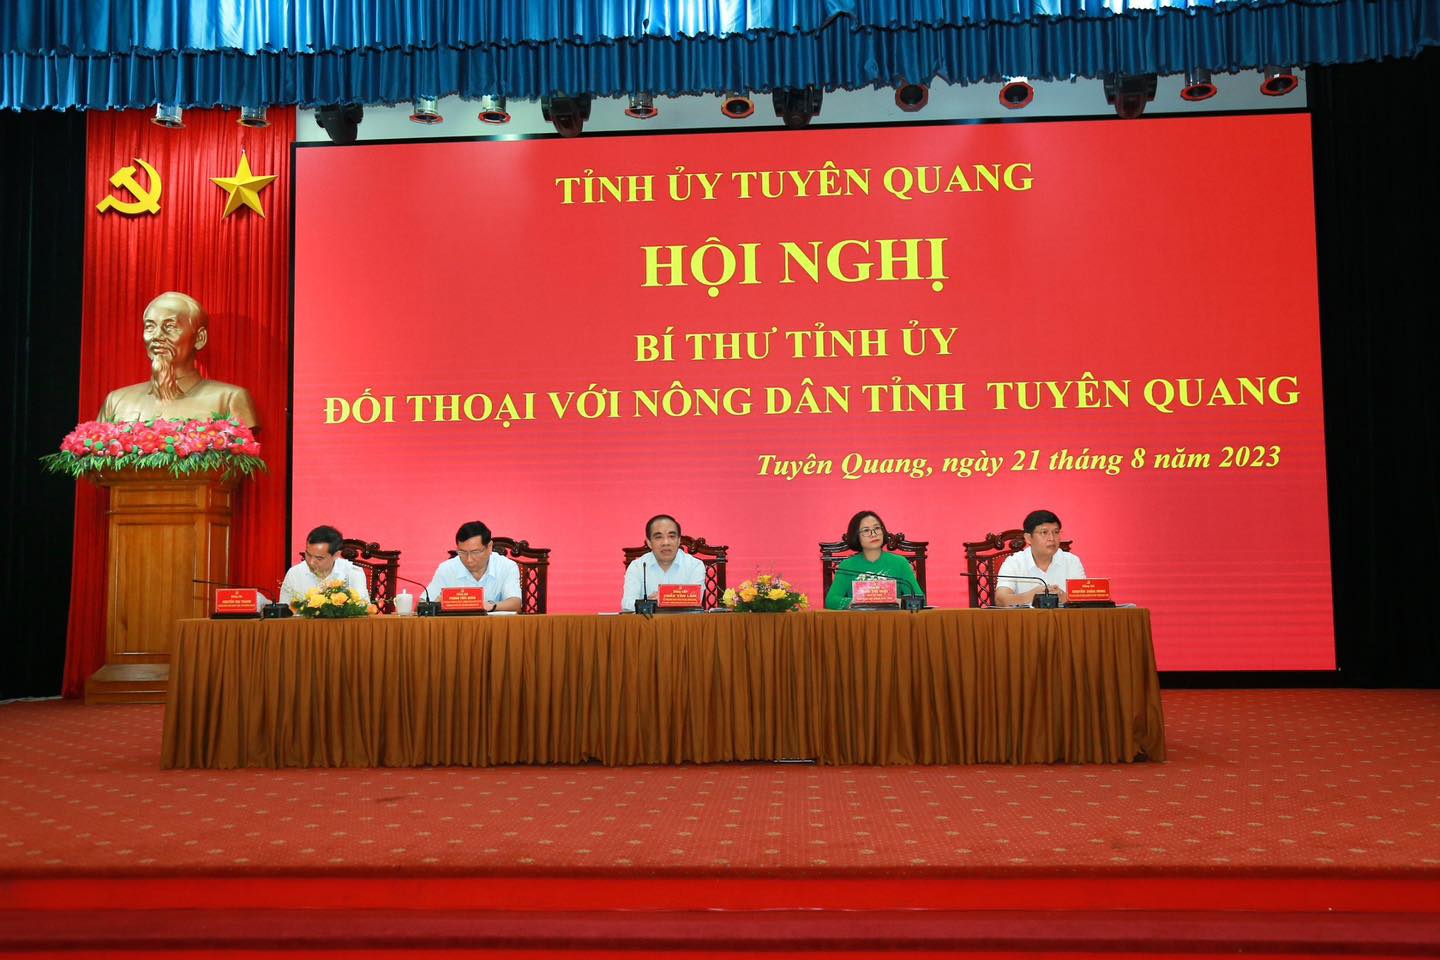 Đối thoại với nông dân, Bí thư Tỉnh ủy Tuyên Quang Chẩu Văn Lâm chỉ đạo hỗ trợ tín dụng cho nông dân  - Ảnh 1.